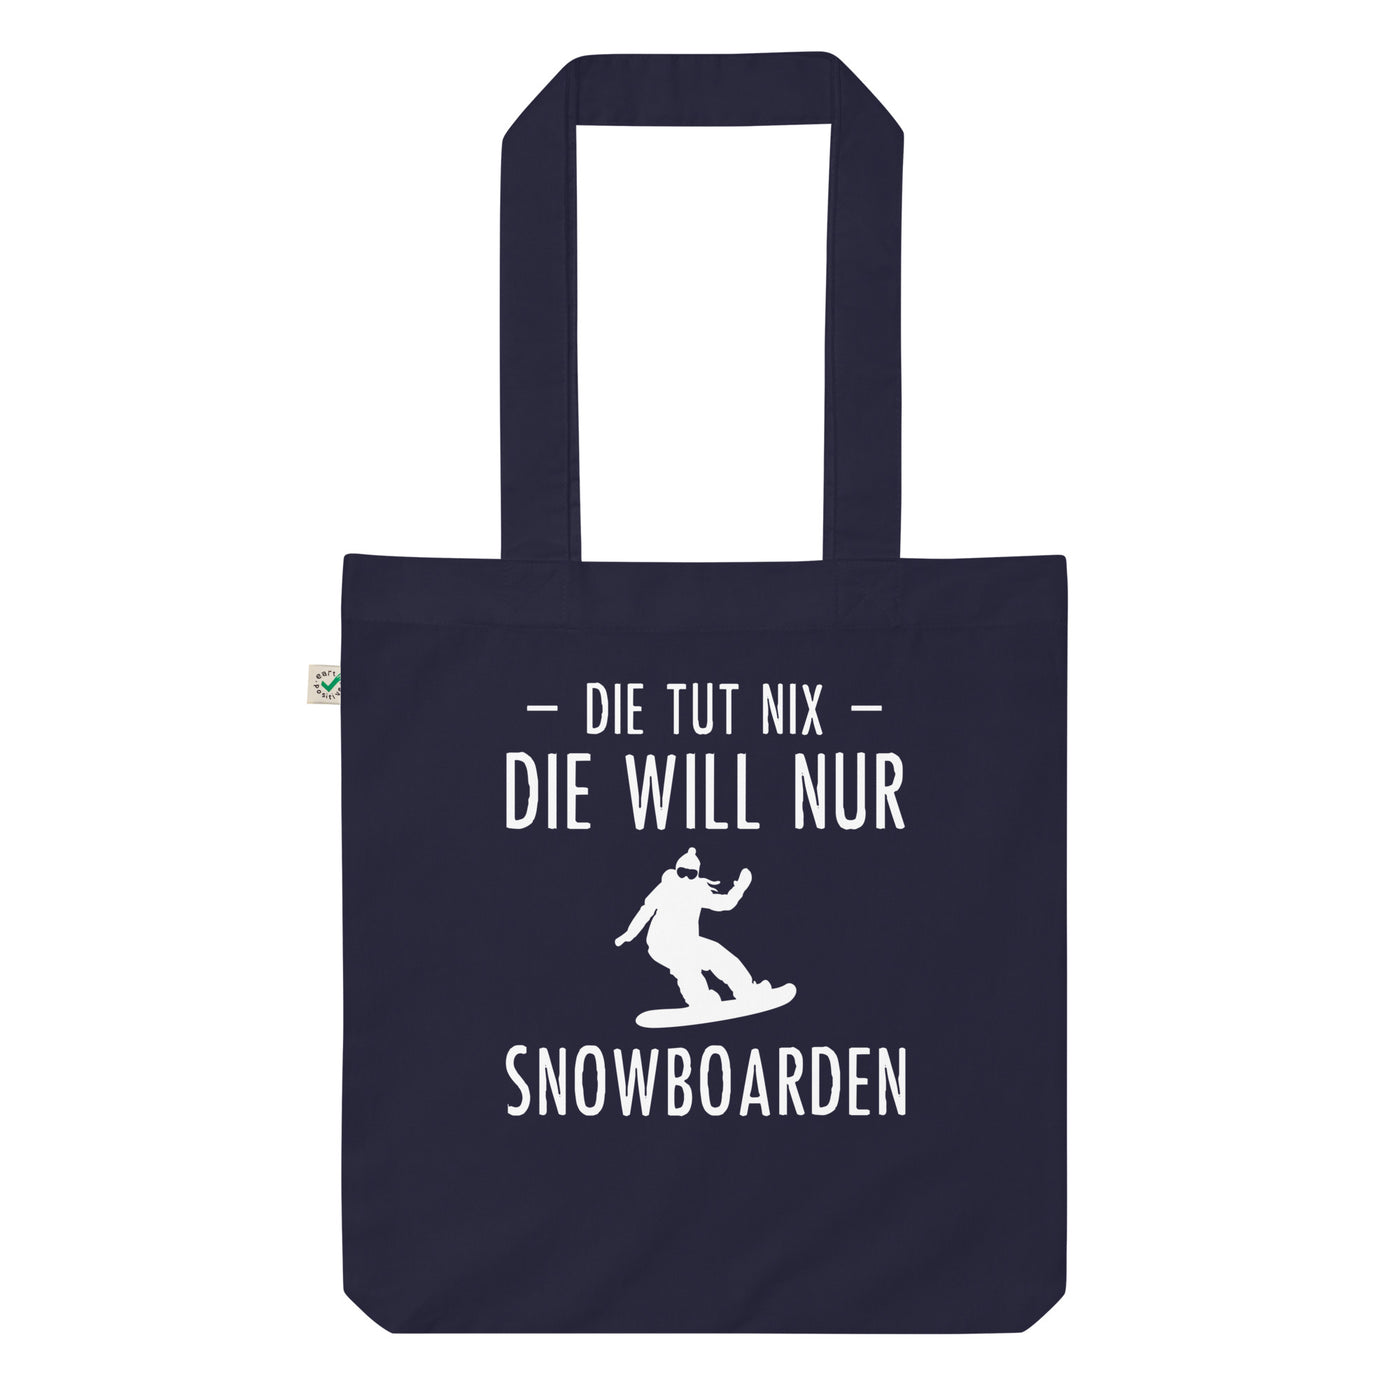 Die Tut Nix Die Will Nur Snowboarden - Organic Einkaufstasche snowboarden Navy